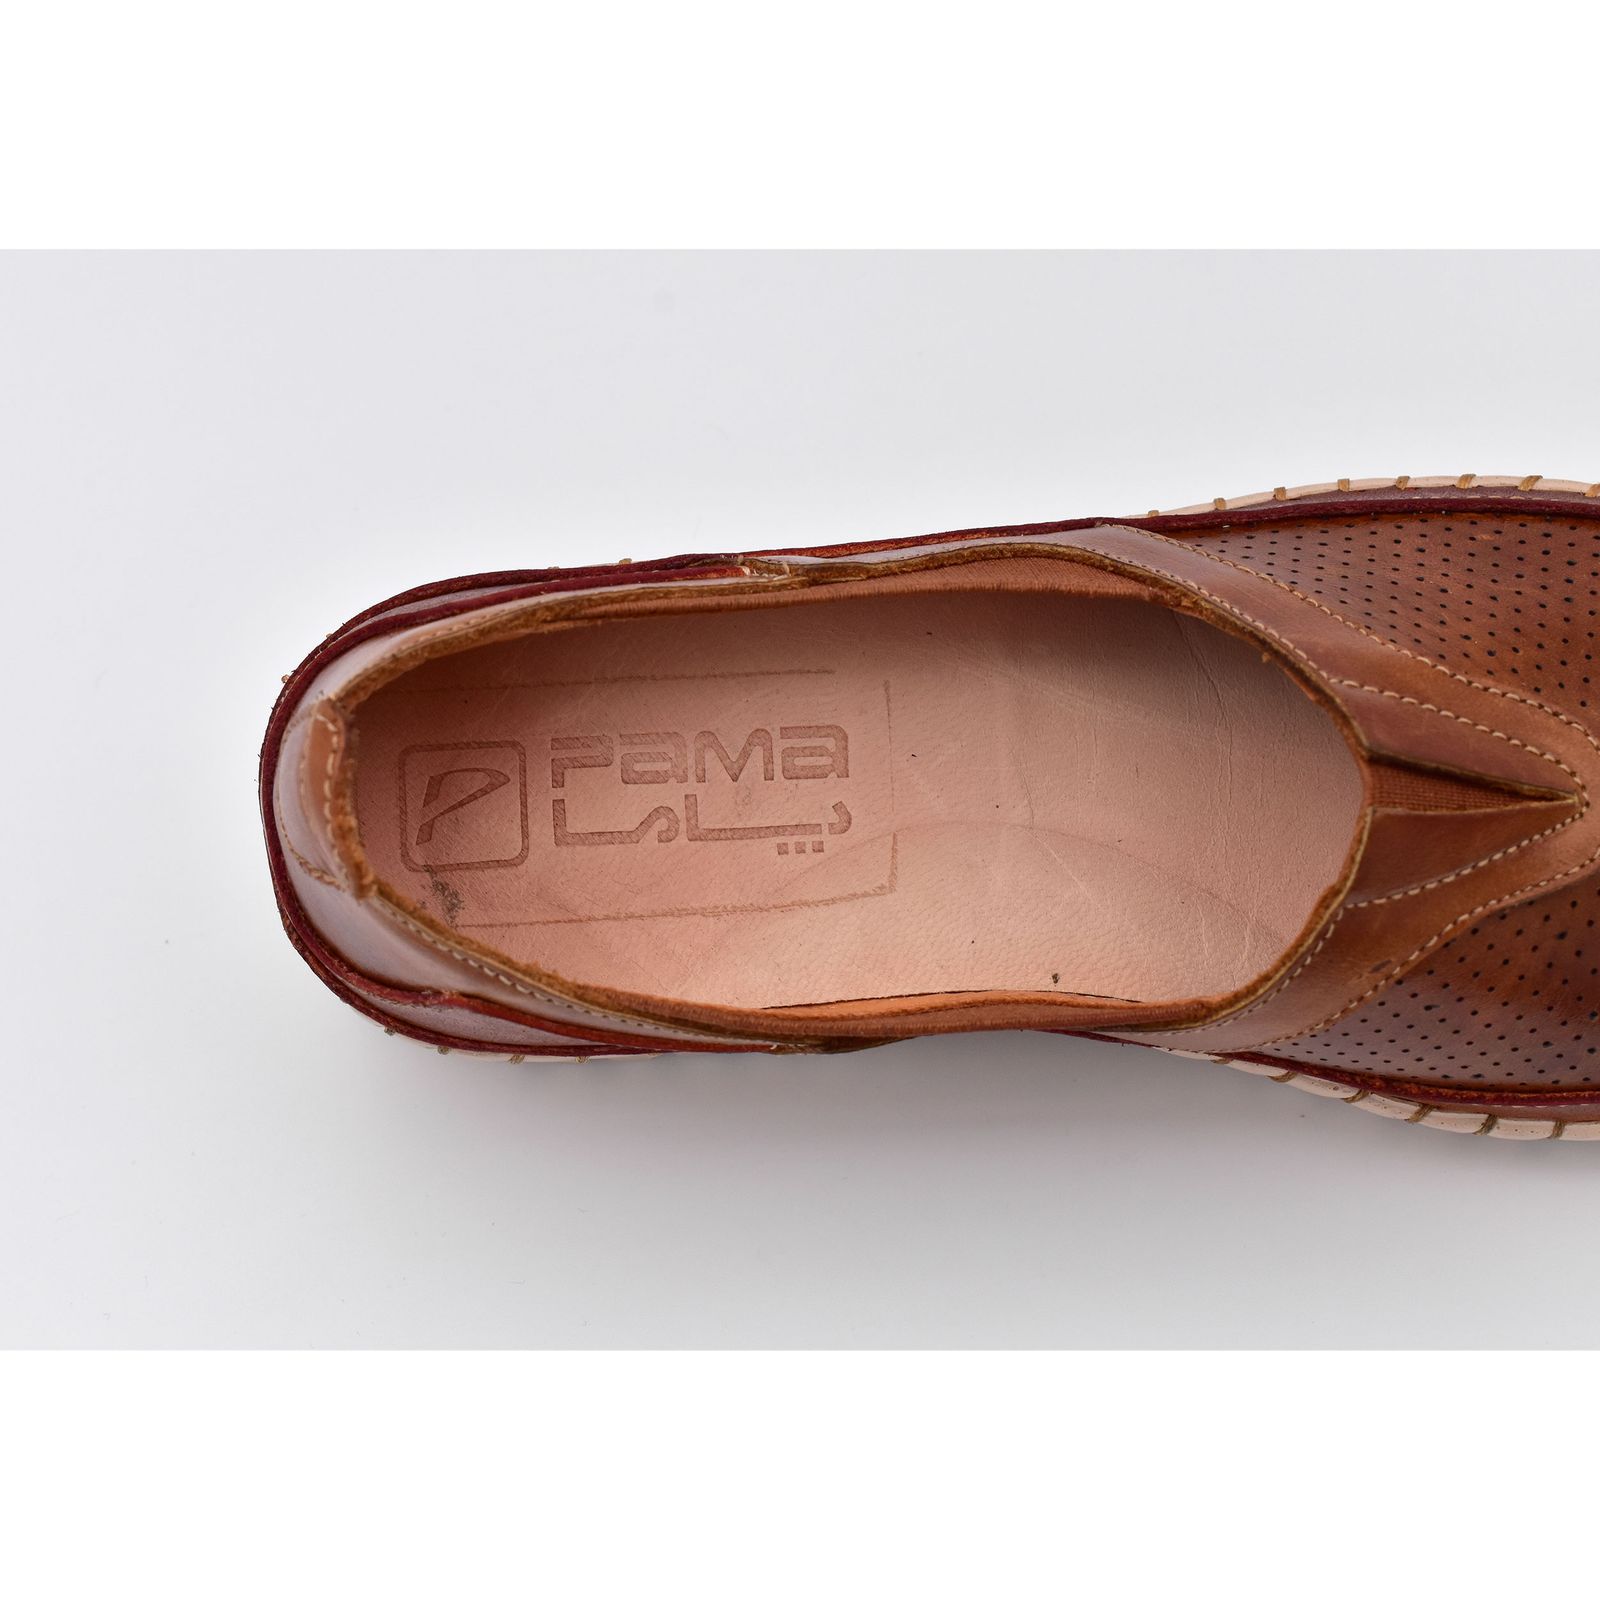 کفش روزمره زنانه پاما مدل P6 کد G1360 -  - 4